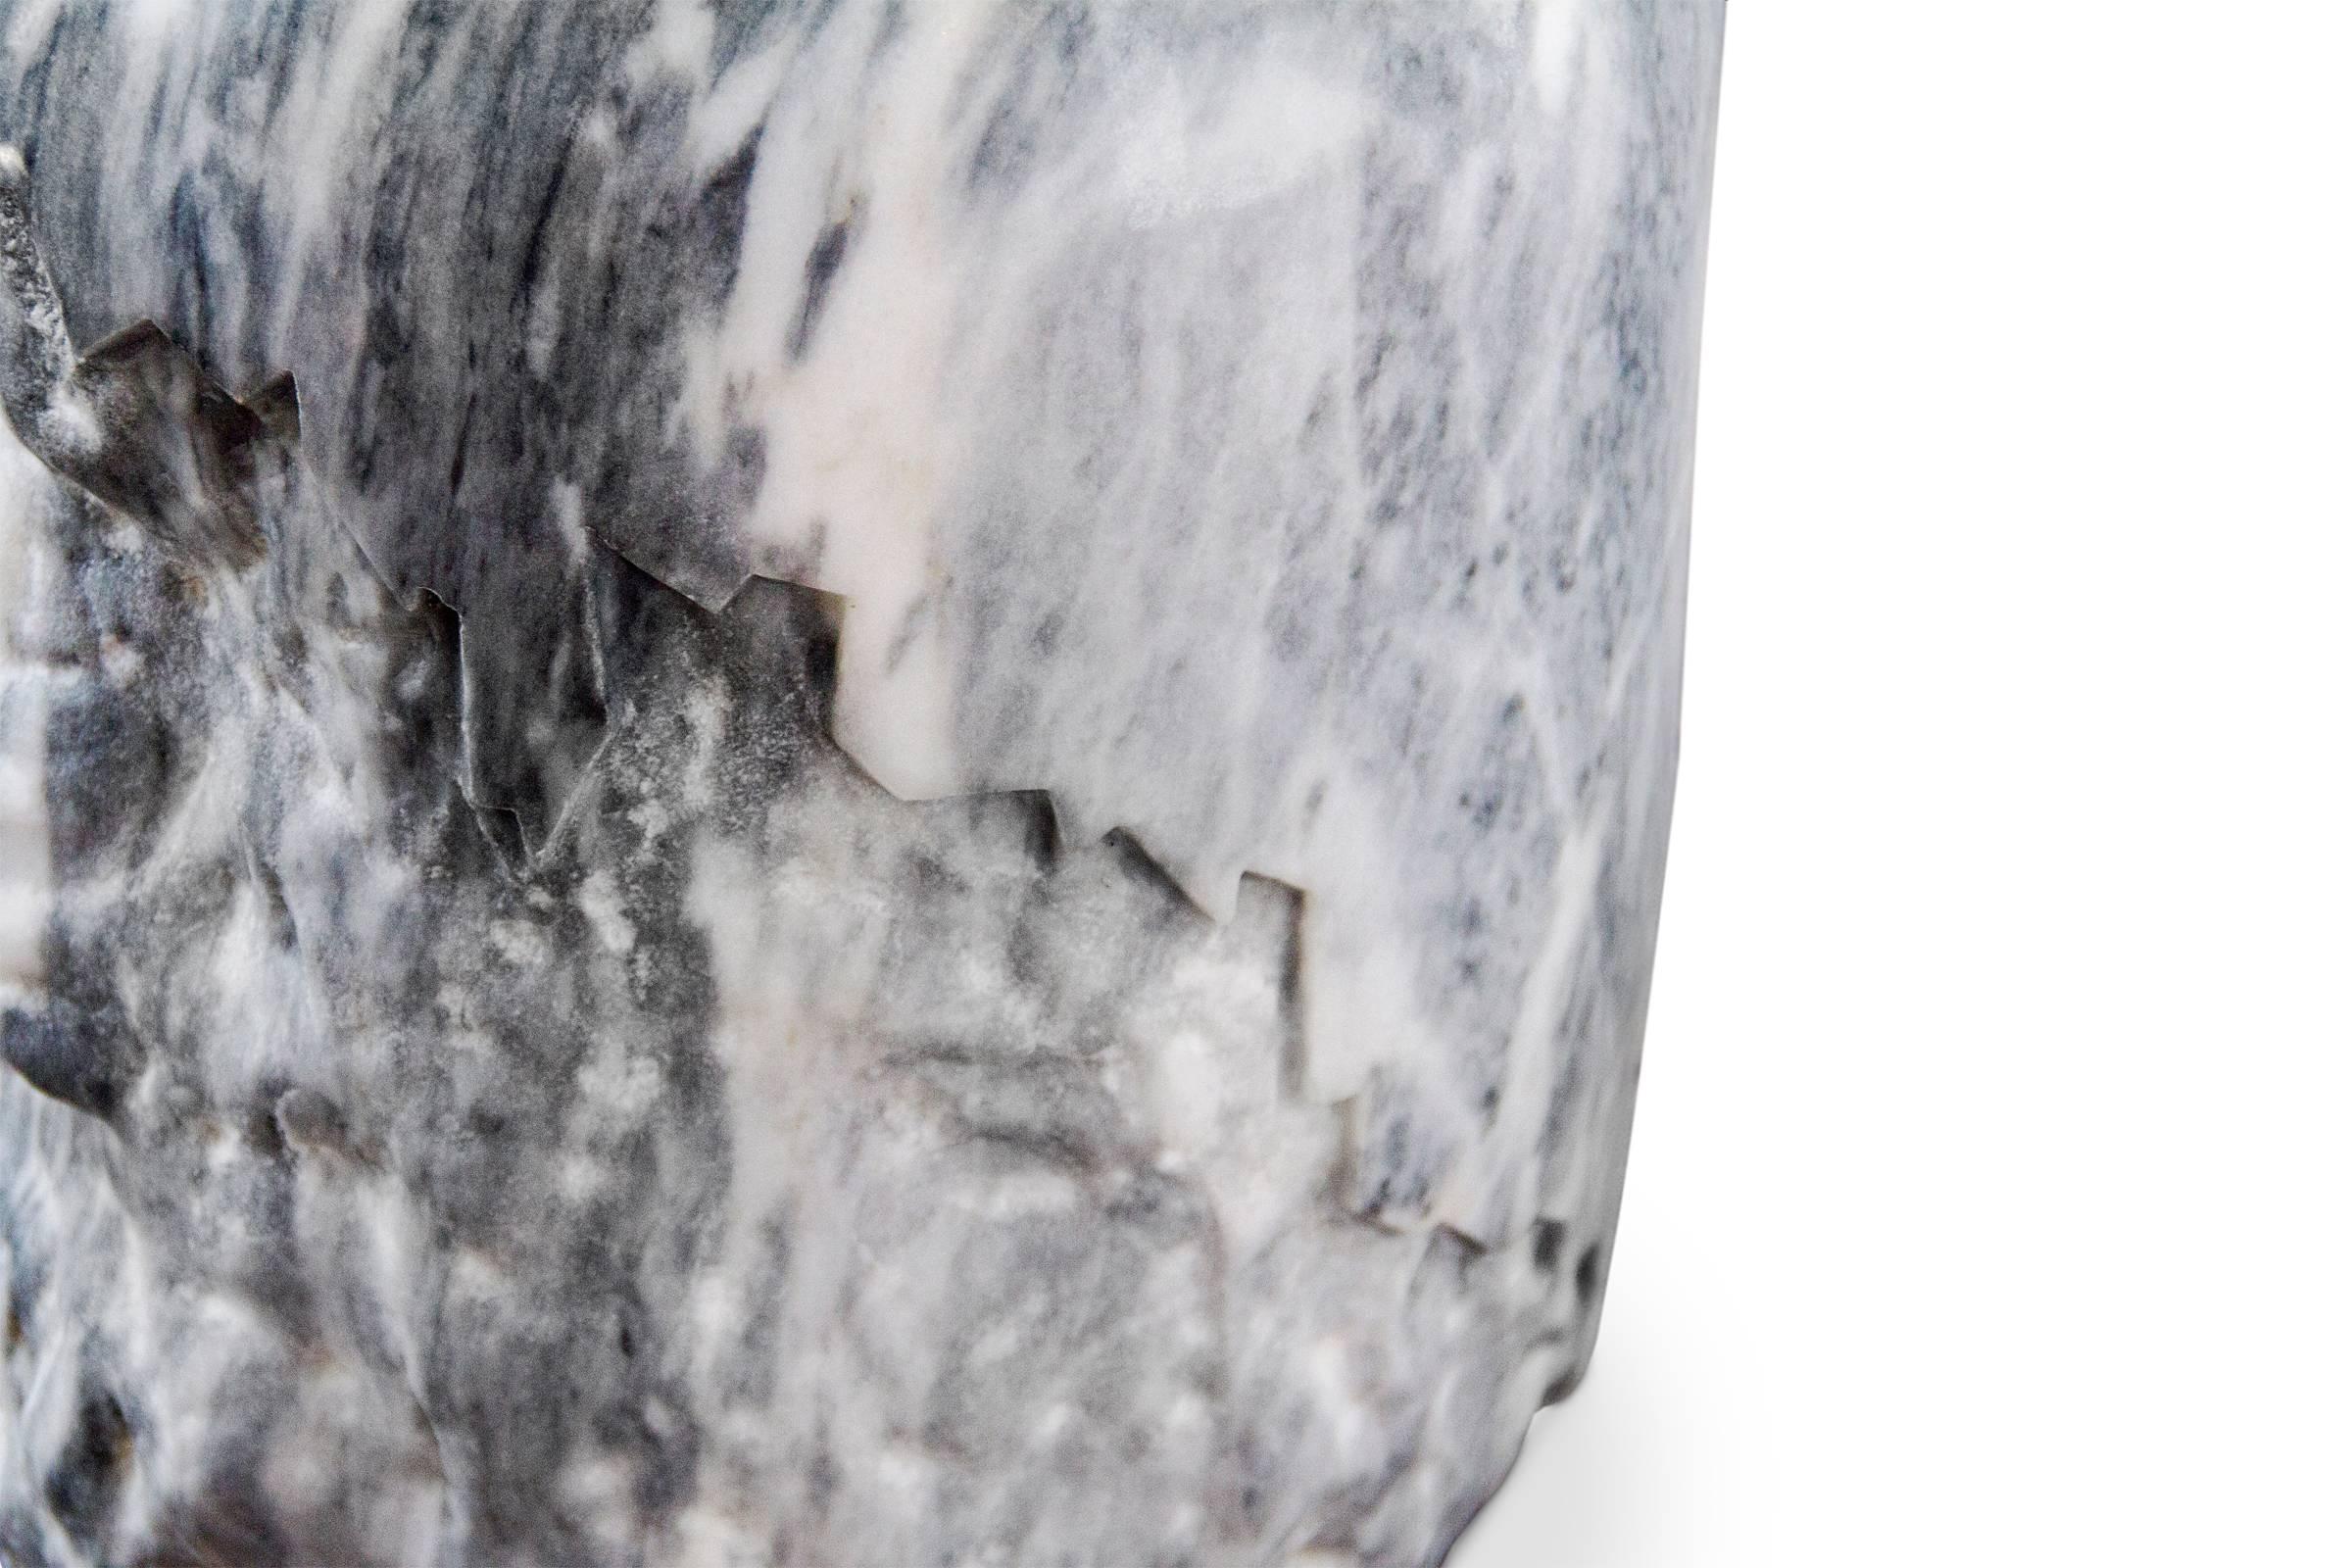 Tabouret en marbre travaillé en véritable marbre de Carrare,
sculpté à la main avec une ligne stylisée. Chaque pièce
est unique et exceptionnelle. Disponible en blanc 
marbre ou marbre gris, veuillez préciser la finition
au moment de votre